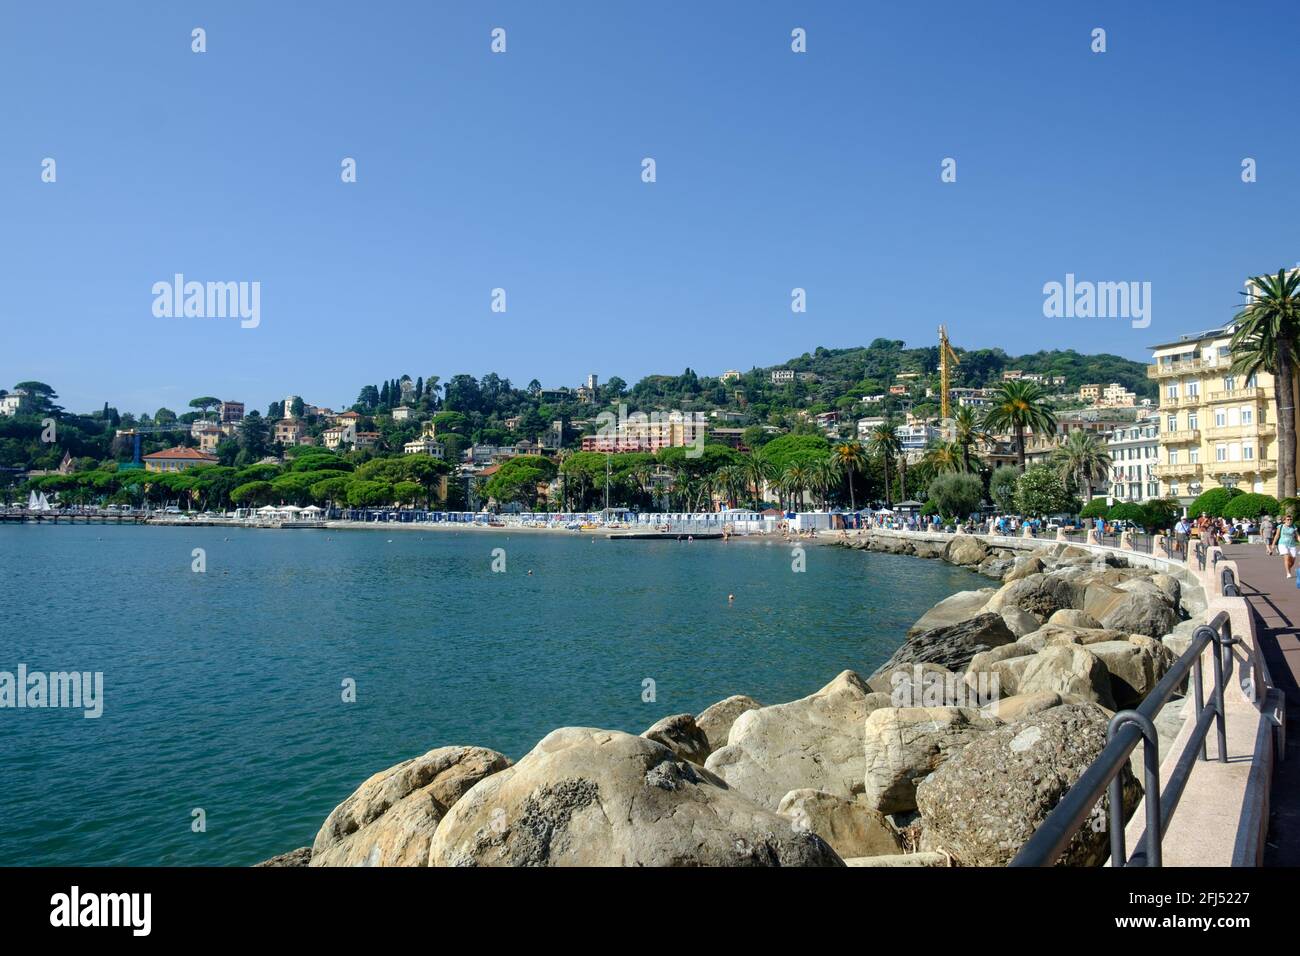 Les 'lungomare' de Rapallo se boudent le long de la mer Ligurienne. Le ciel clair et les arbres rehaussent l'effet tropical. Banque D'Images